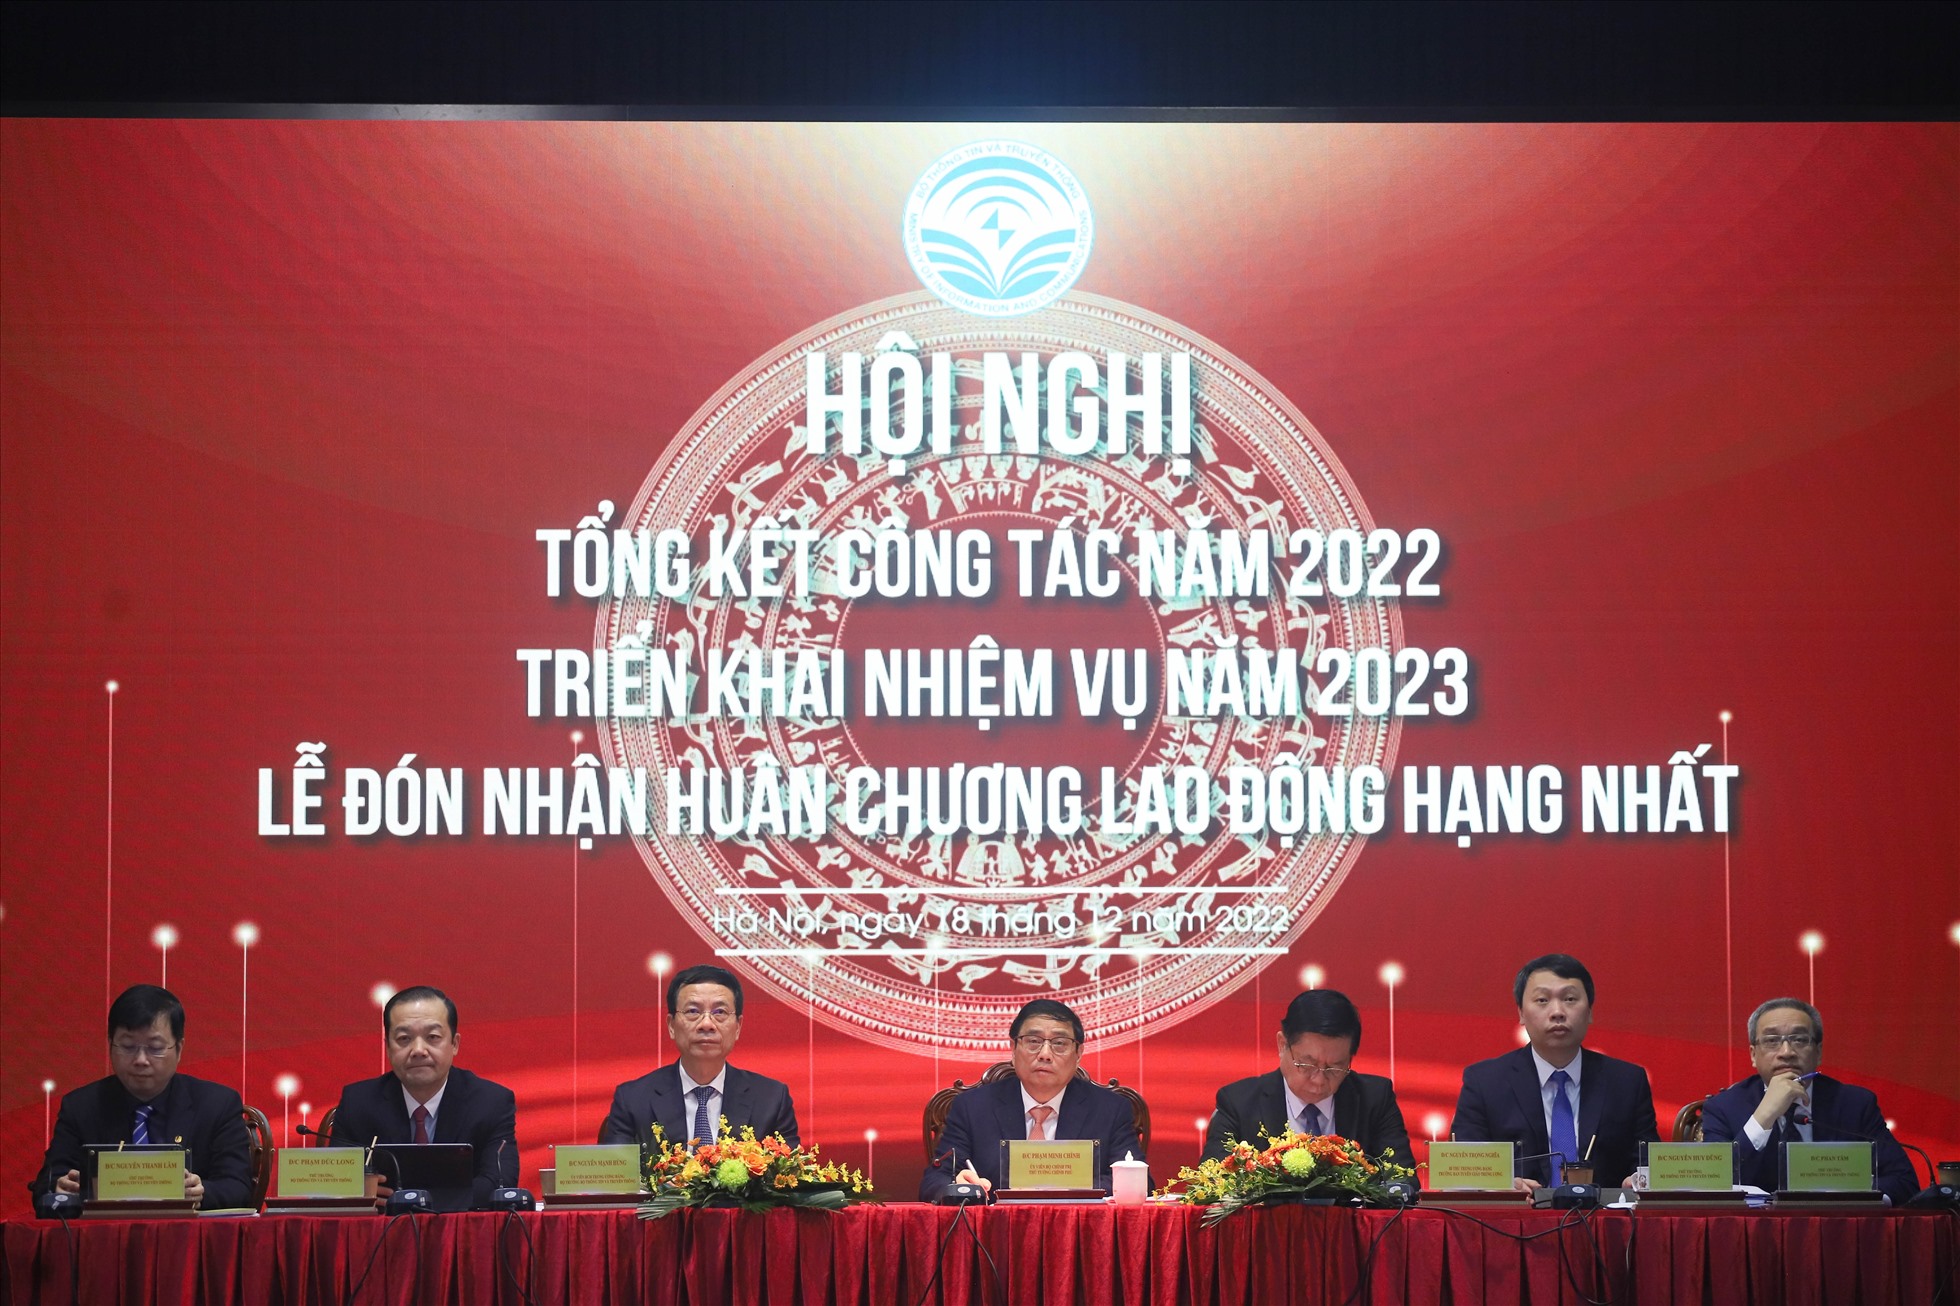 Thủ tướng Phạm Minh Chính và Trưởng ban Tuyên giáo Trung ương Nguyễn Trọng Nghĩa cùng lãnh đạo Bộ Thông tin và Truyền thông chủ trì Hội nghị.